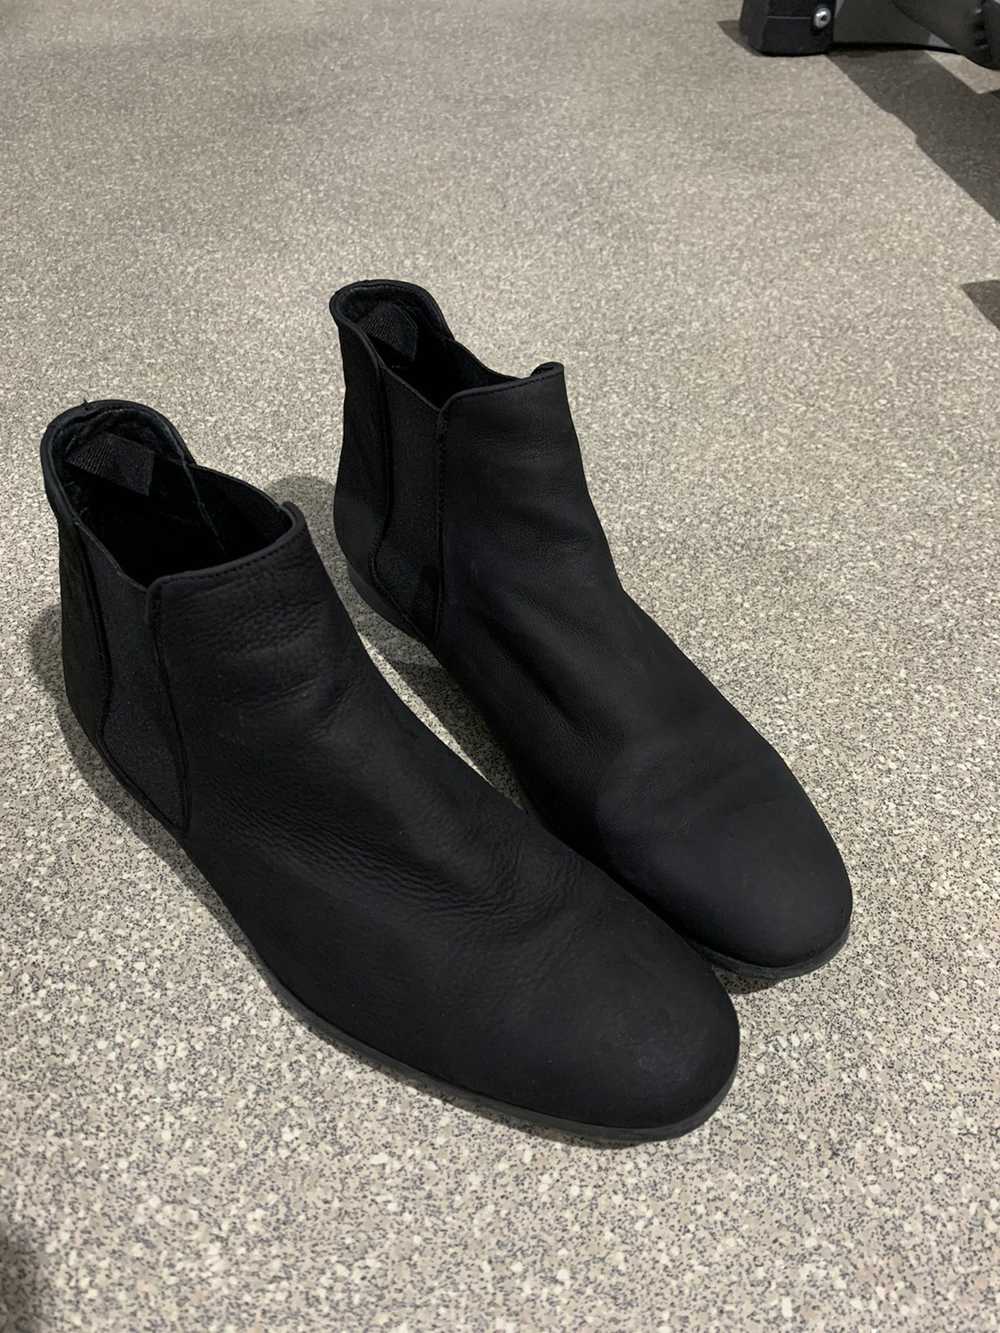 Zara Zara black chelsea boot - image 1